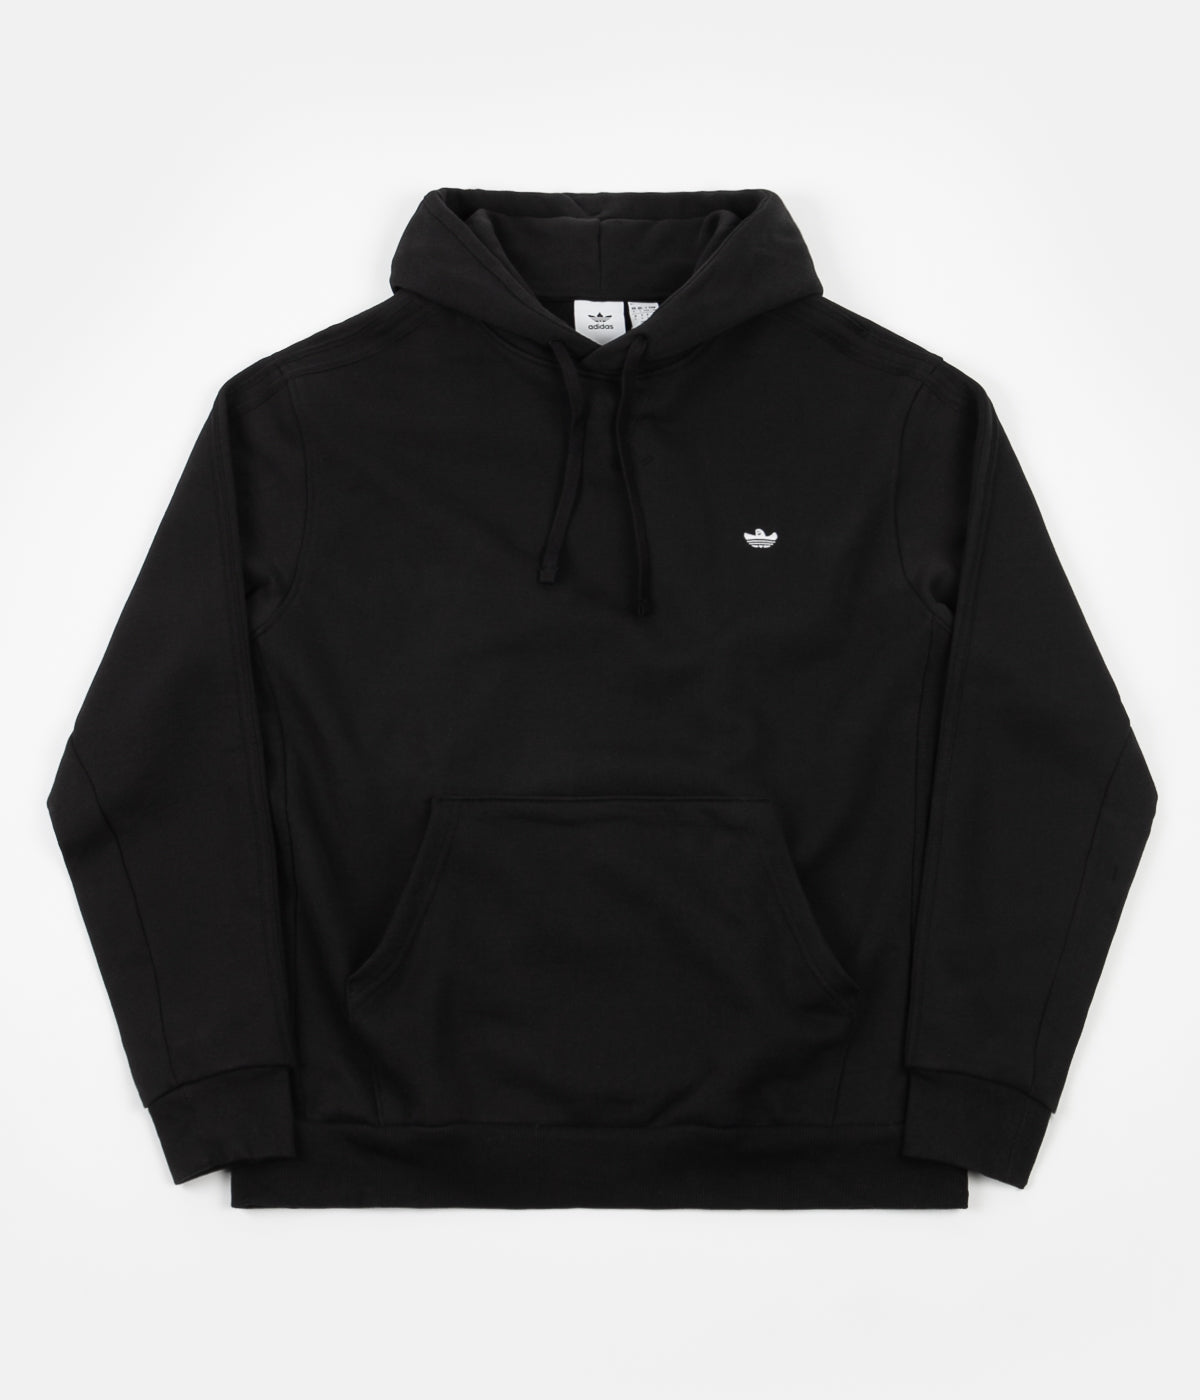 adidas hoodie 2018